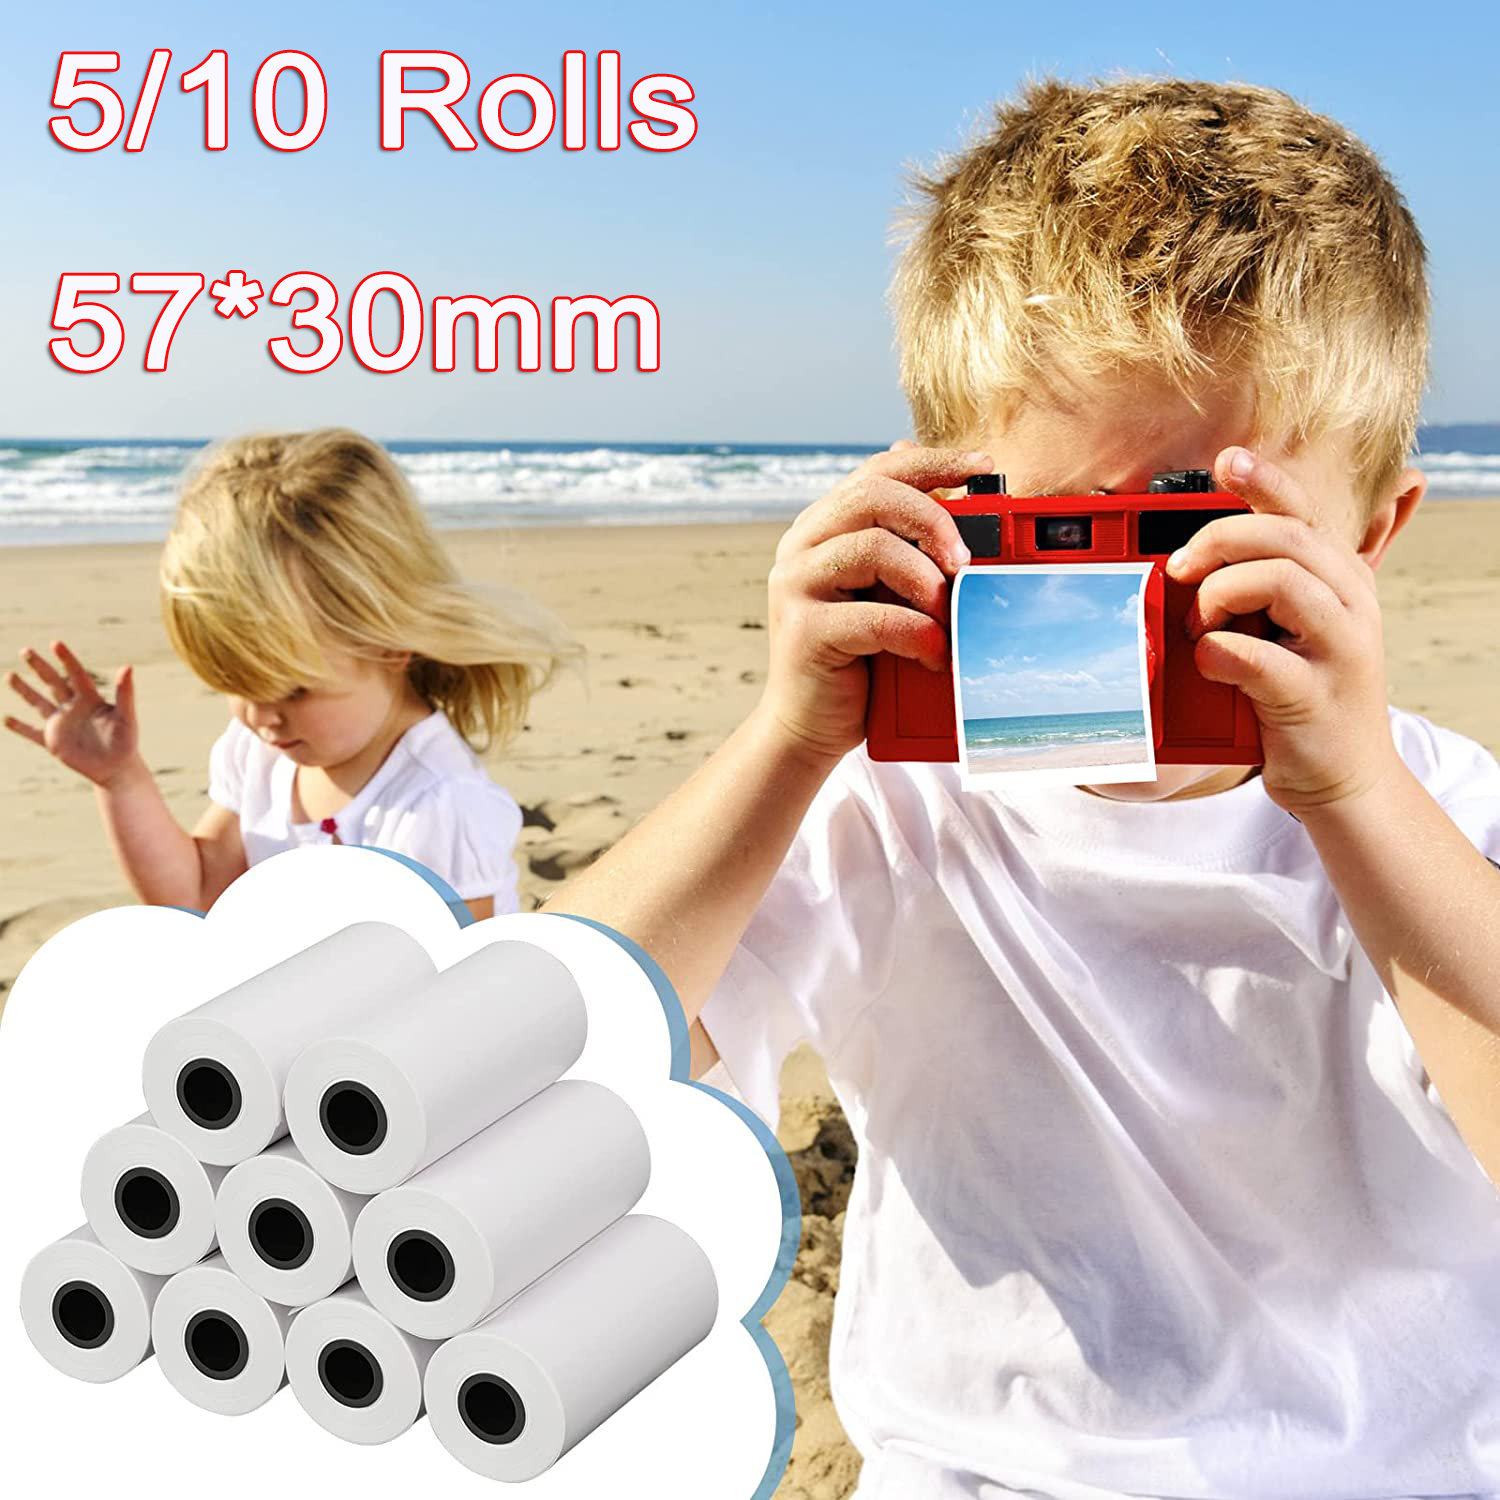 어린이 카메라 즉석 프린터 및 키즈 카메라 인쇄 용지 교체 액세서리 파용 57*30mm 감열지 컬러 화이트